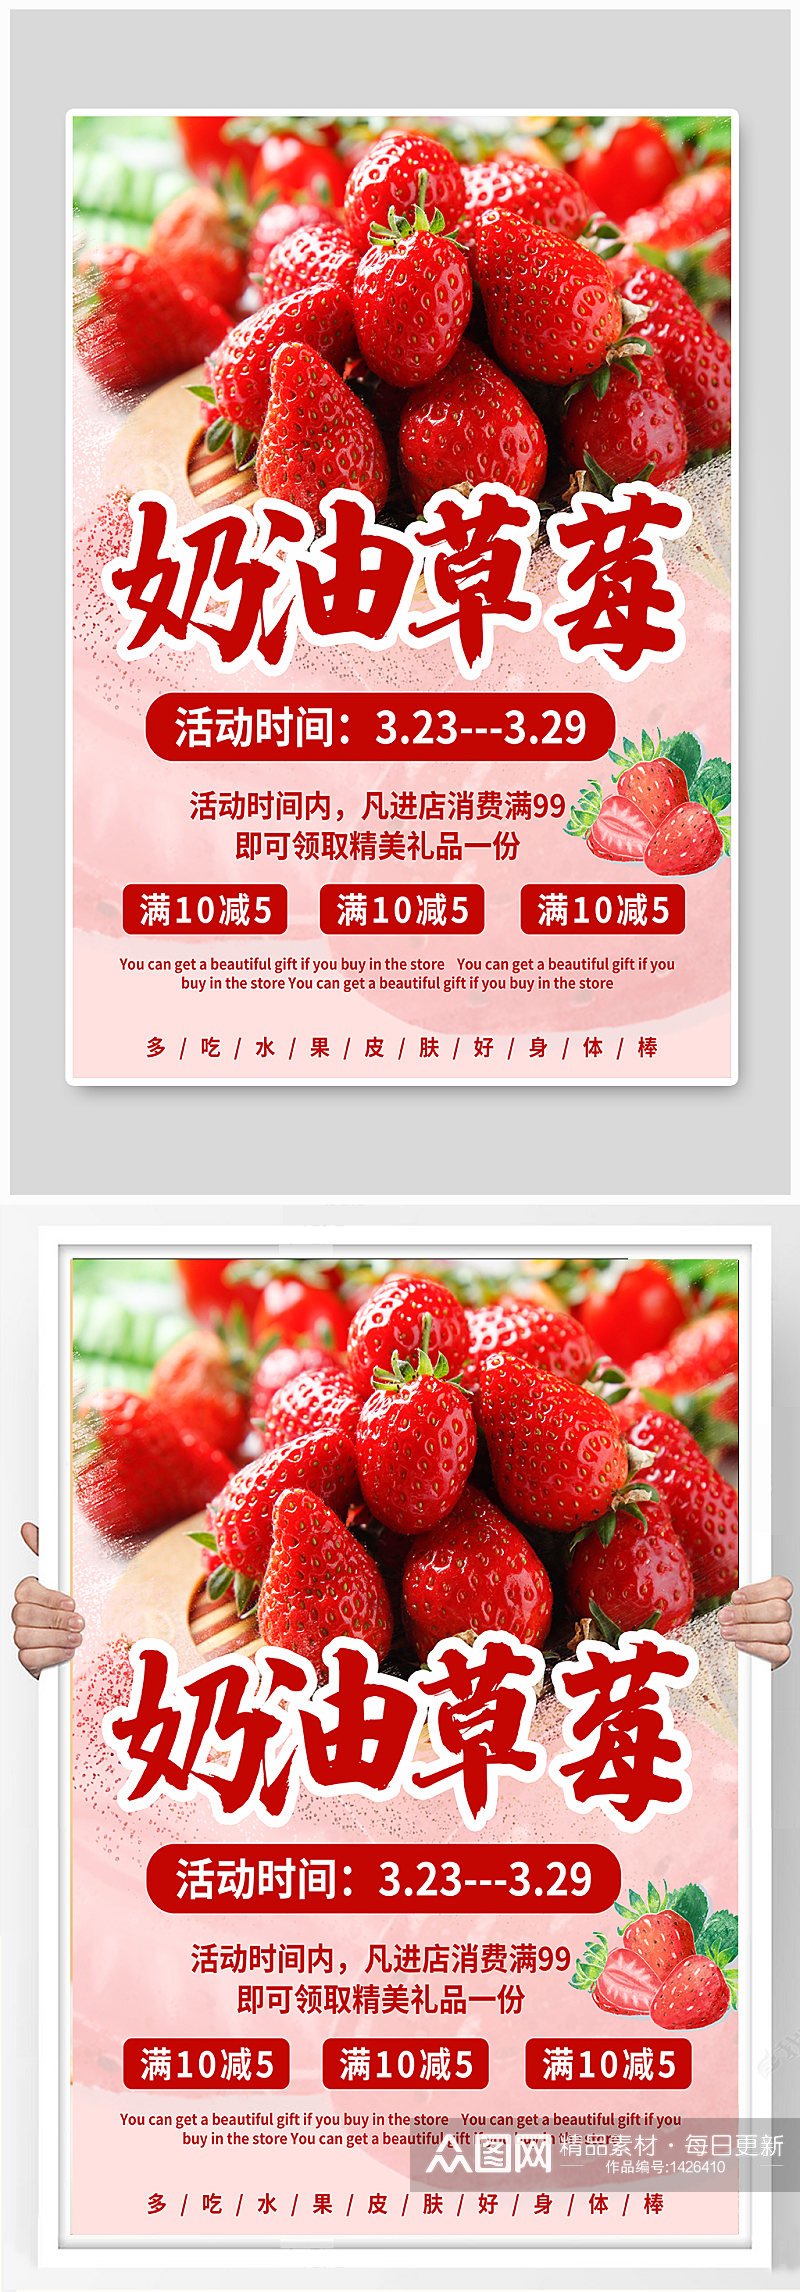 草莓促销宣传海报素材